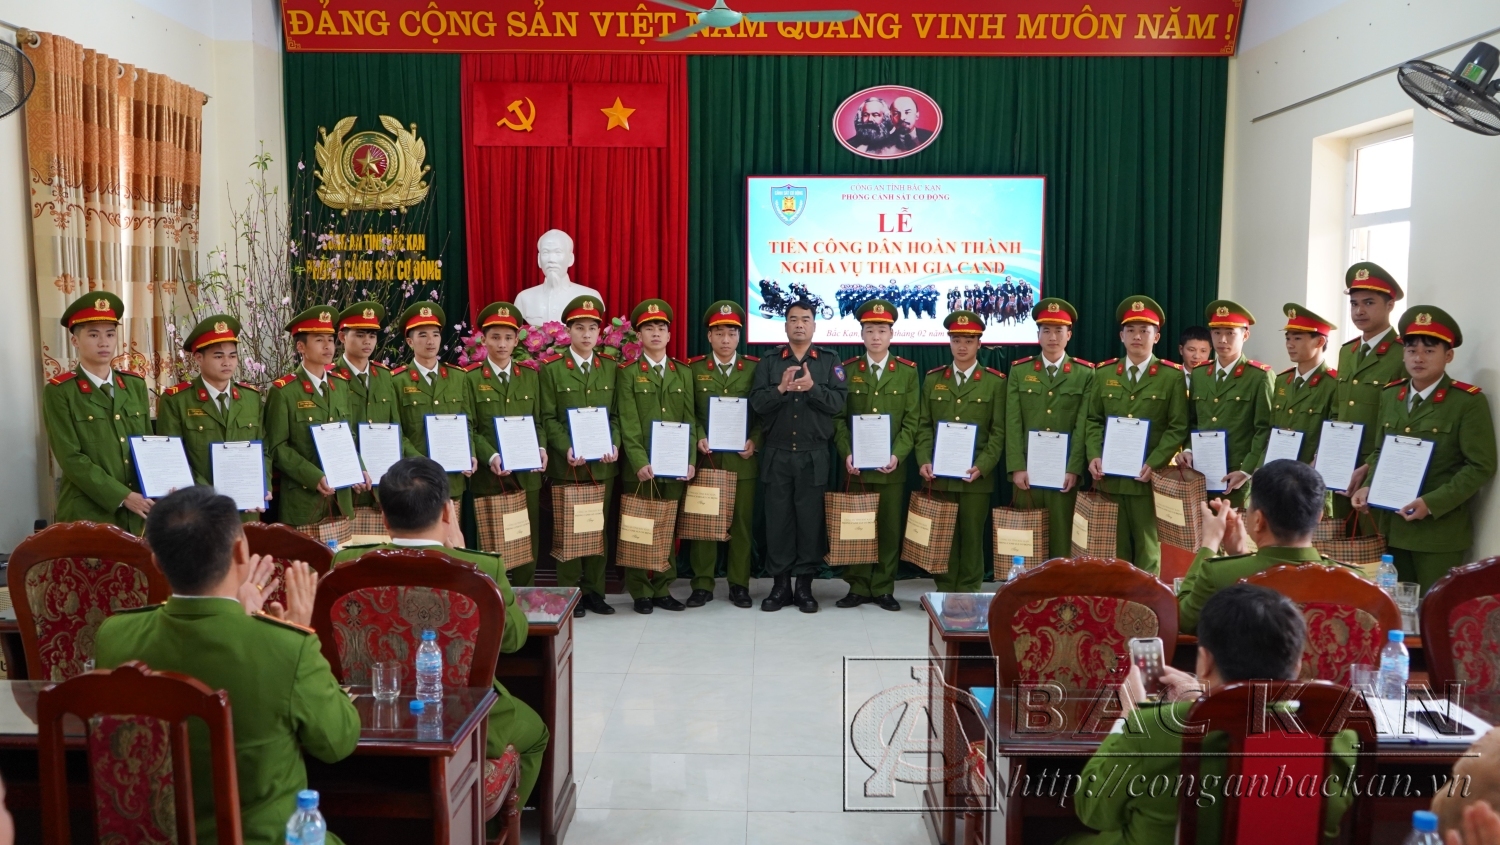 Trung tá Ma Ngọc Bắc – Phó Trưởng phòng Cảnh sát cơ động trao quyết định và tặng quà lưu niệm cho các công dân hoàn thành nghĩa vụ